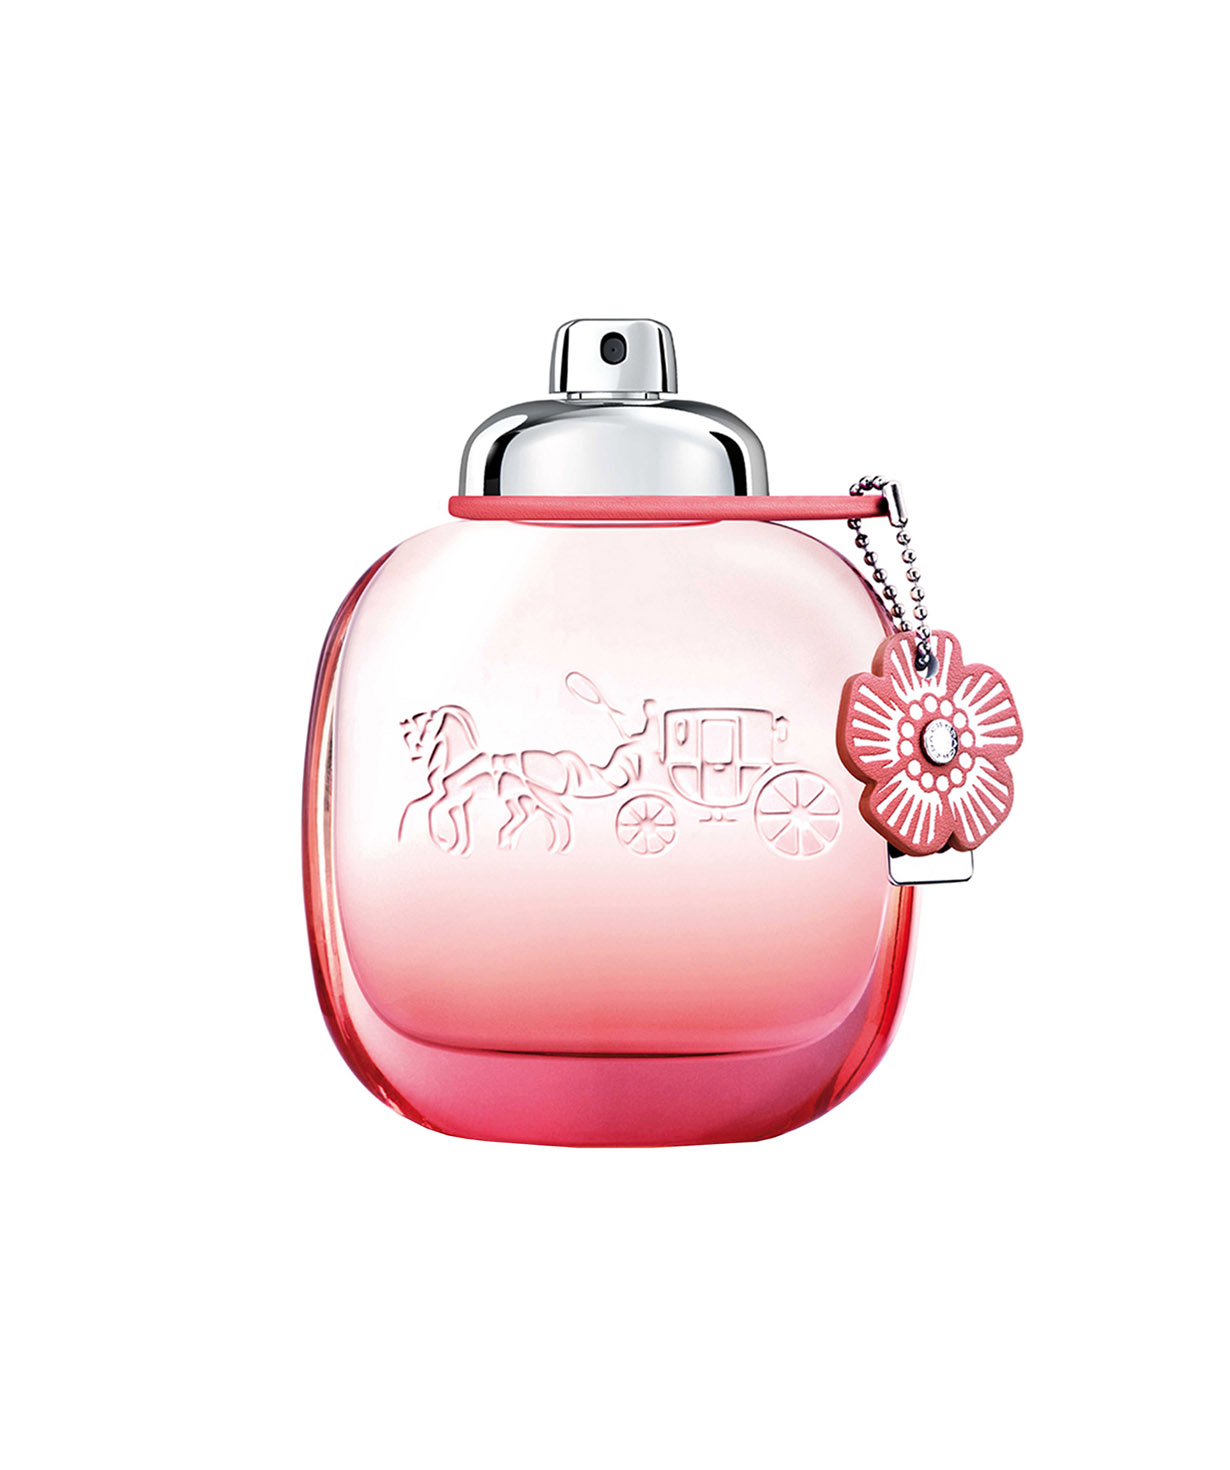 Perfume «Coach» Floral Blush, for women, 50 ml